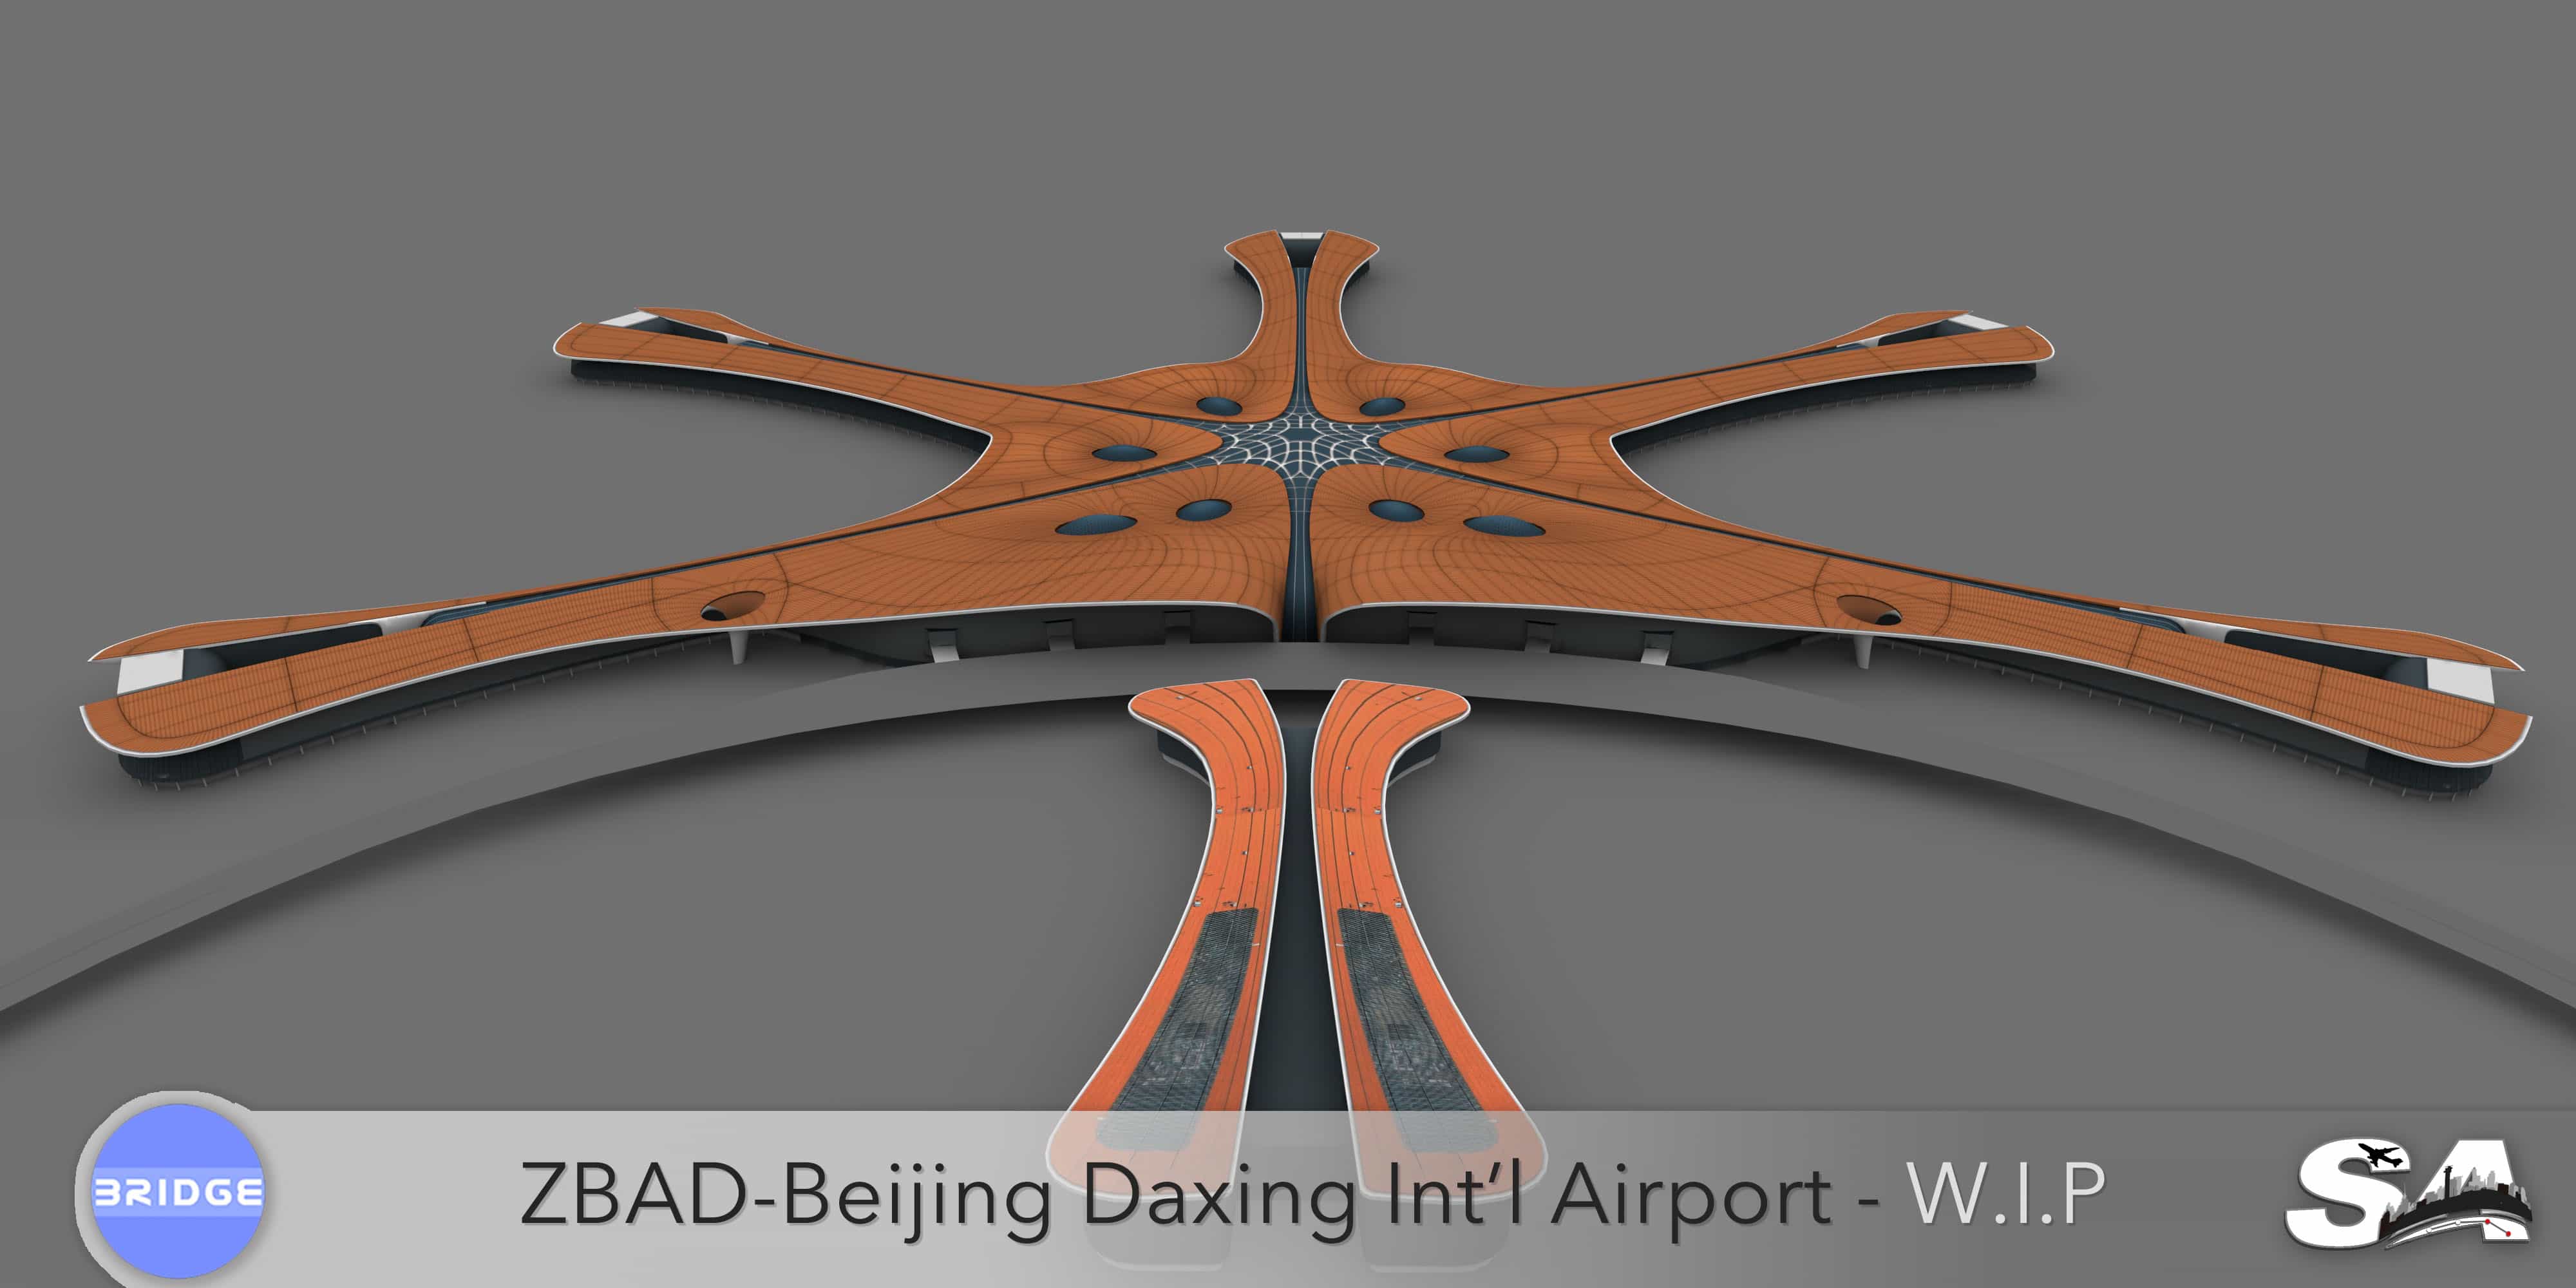 【官宣】ZBAD北京大兴国际机场-正式开始制作-6825 